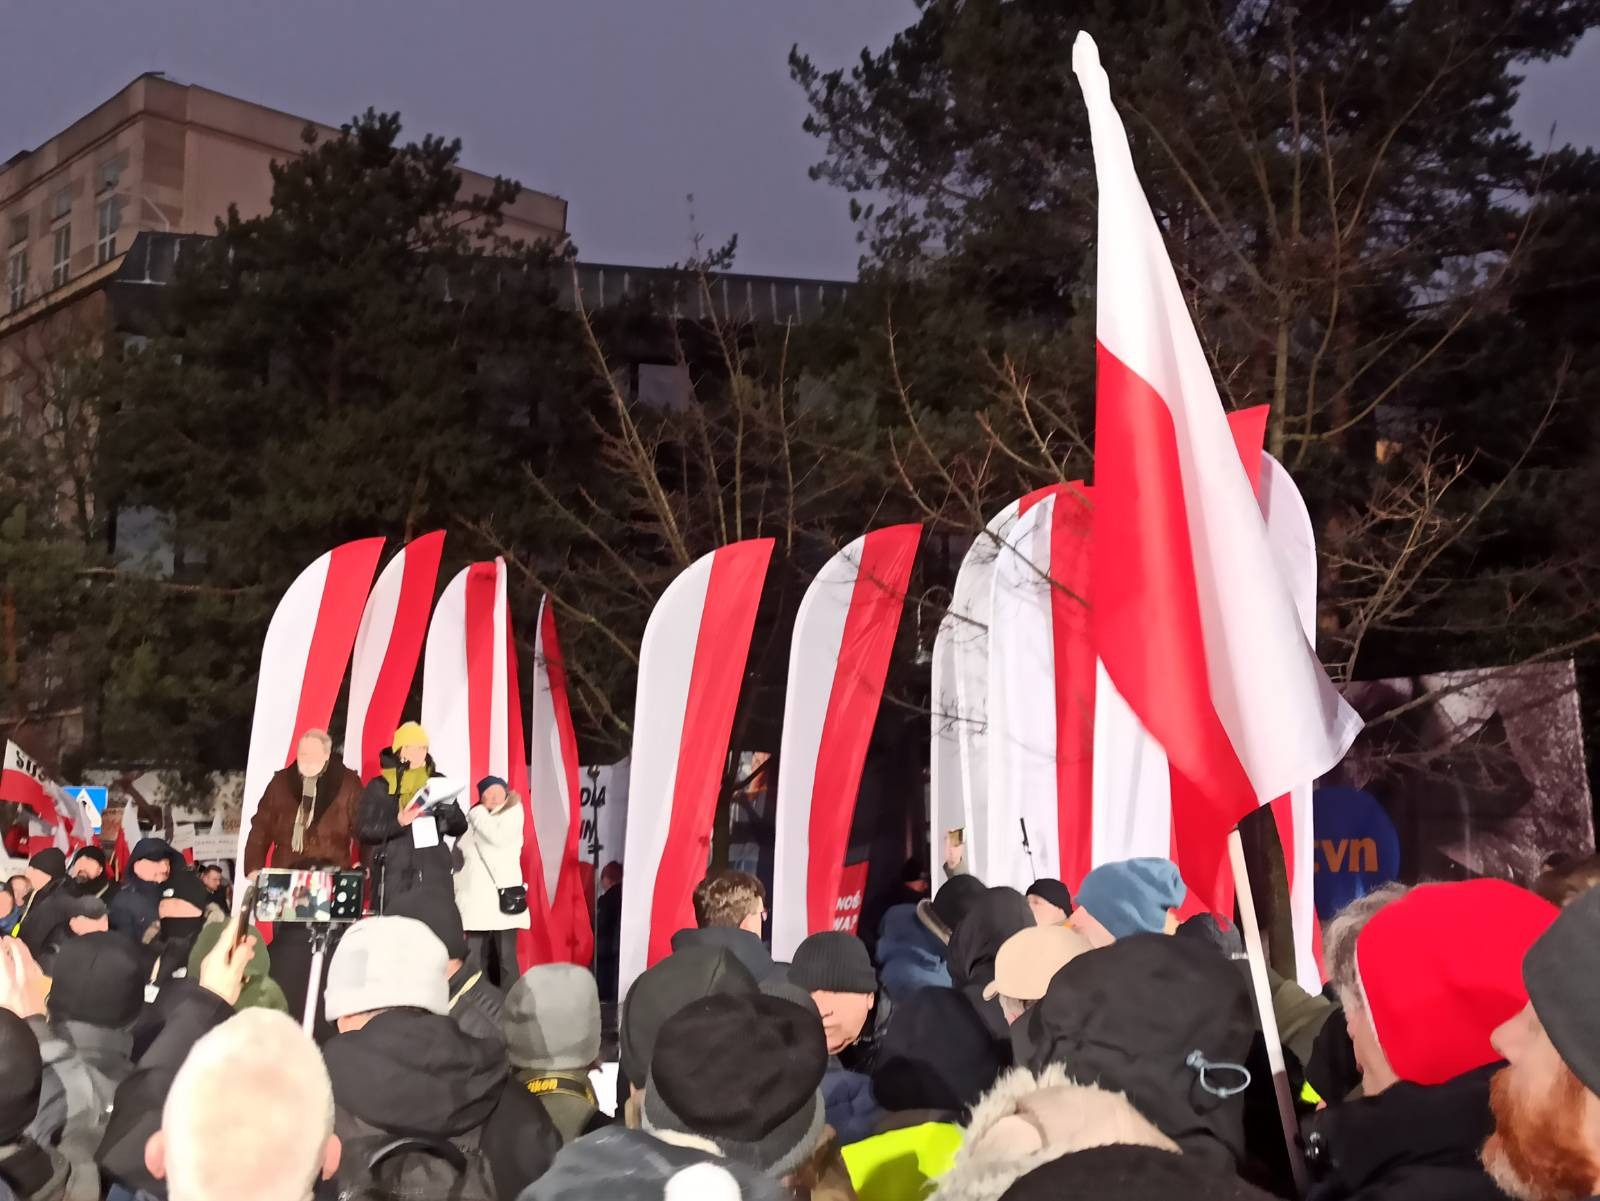 Walczymy o suwerenność Polski. Tak nam dopomóż Bóg